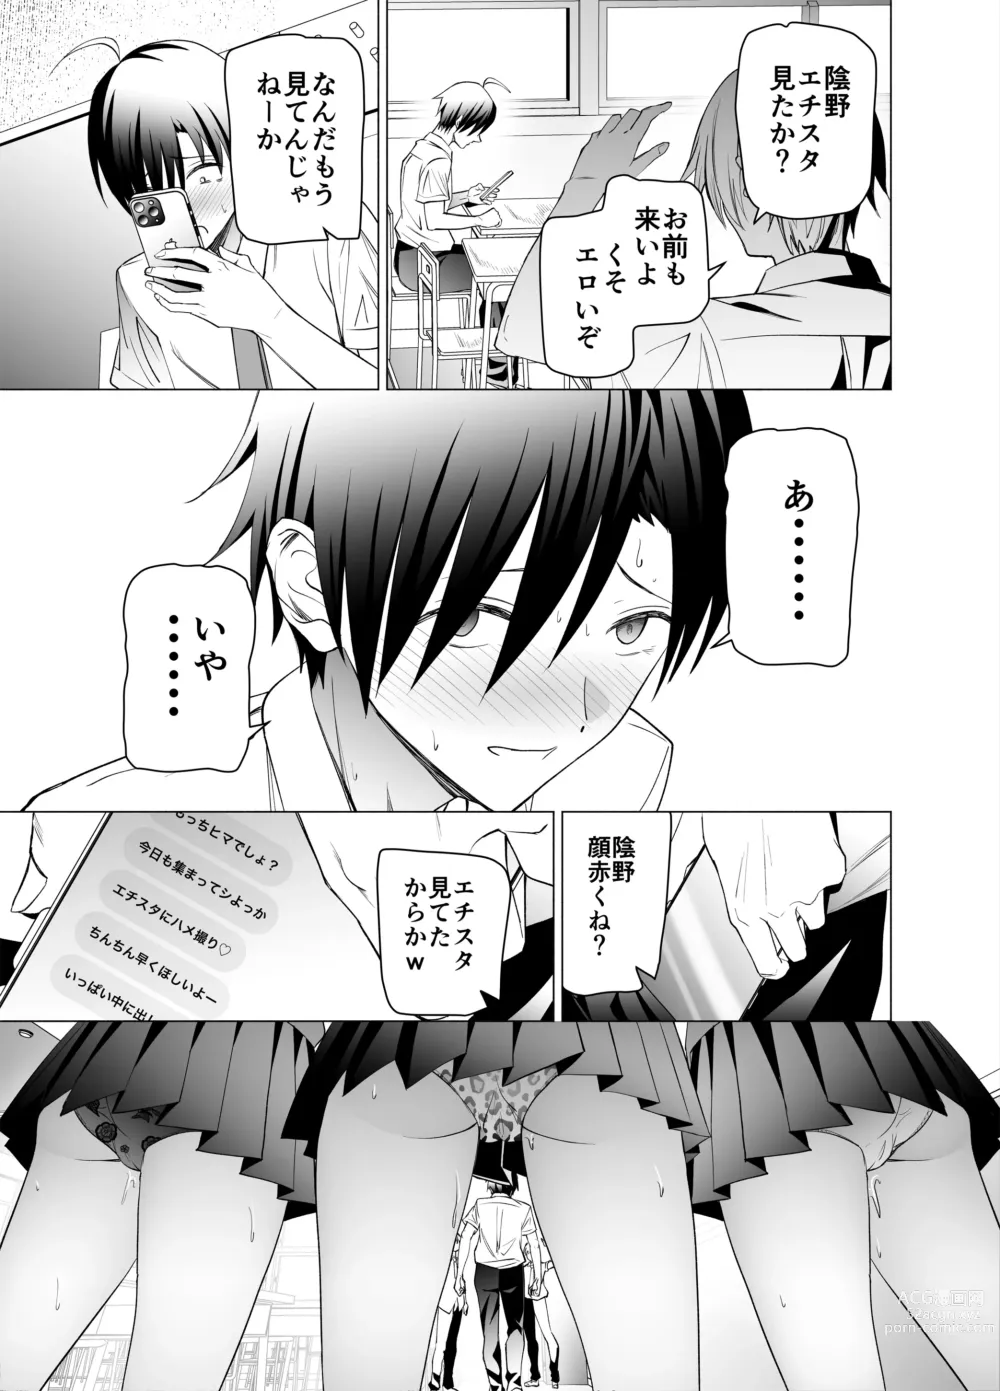 Page 82 of doujinshi Ero SNS no Iine no Tame ni Sematte Kuru Gal no Hanashi